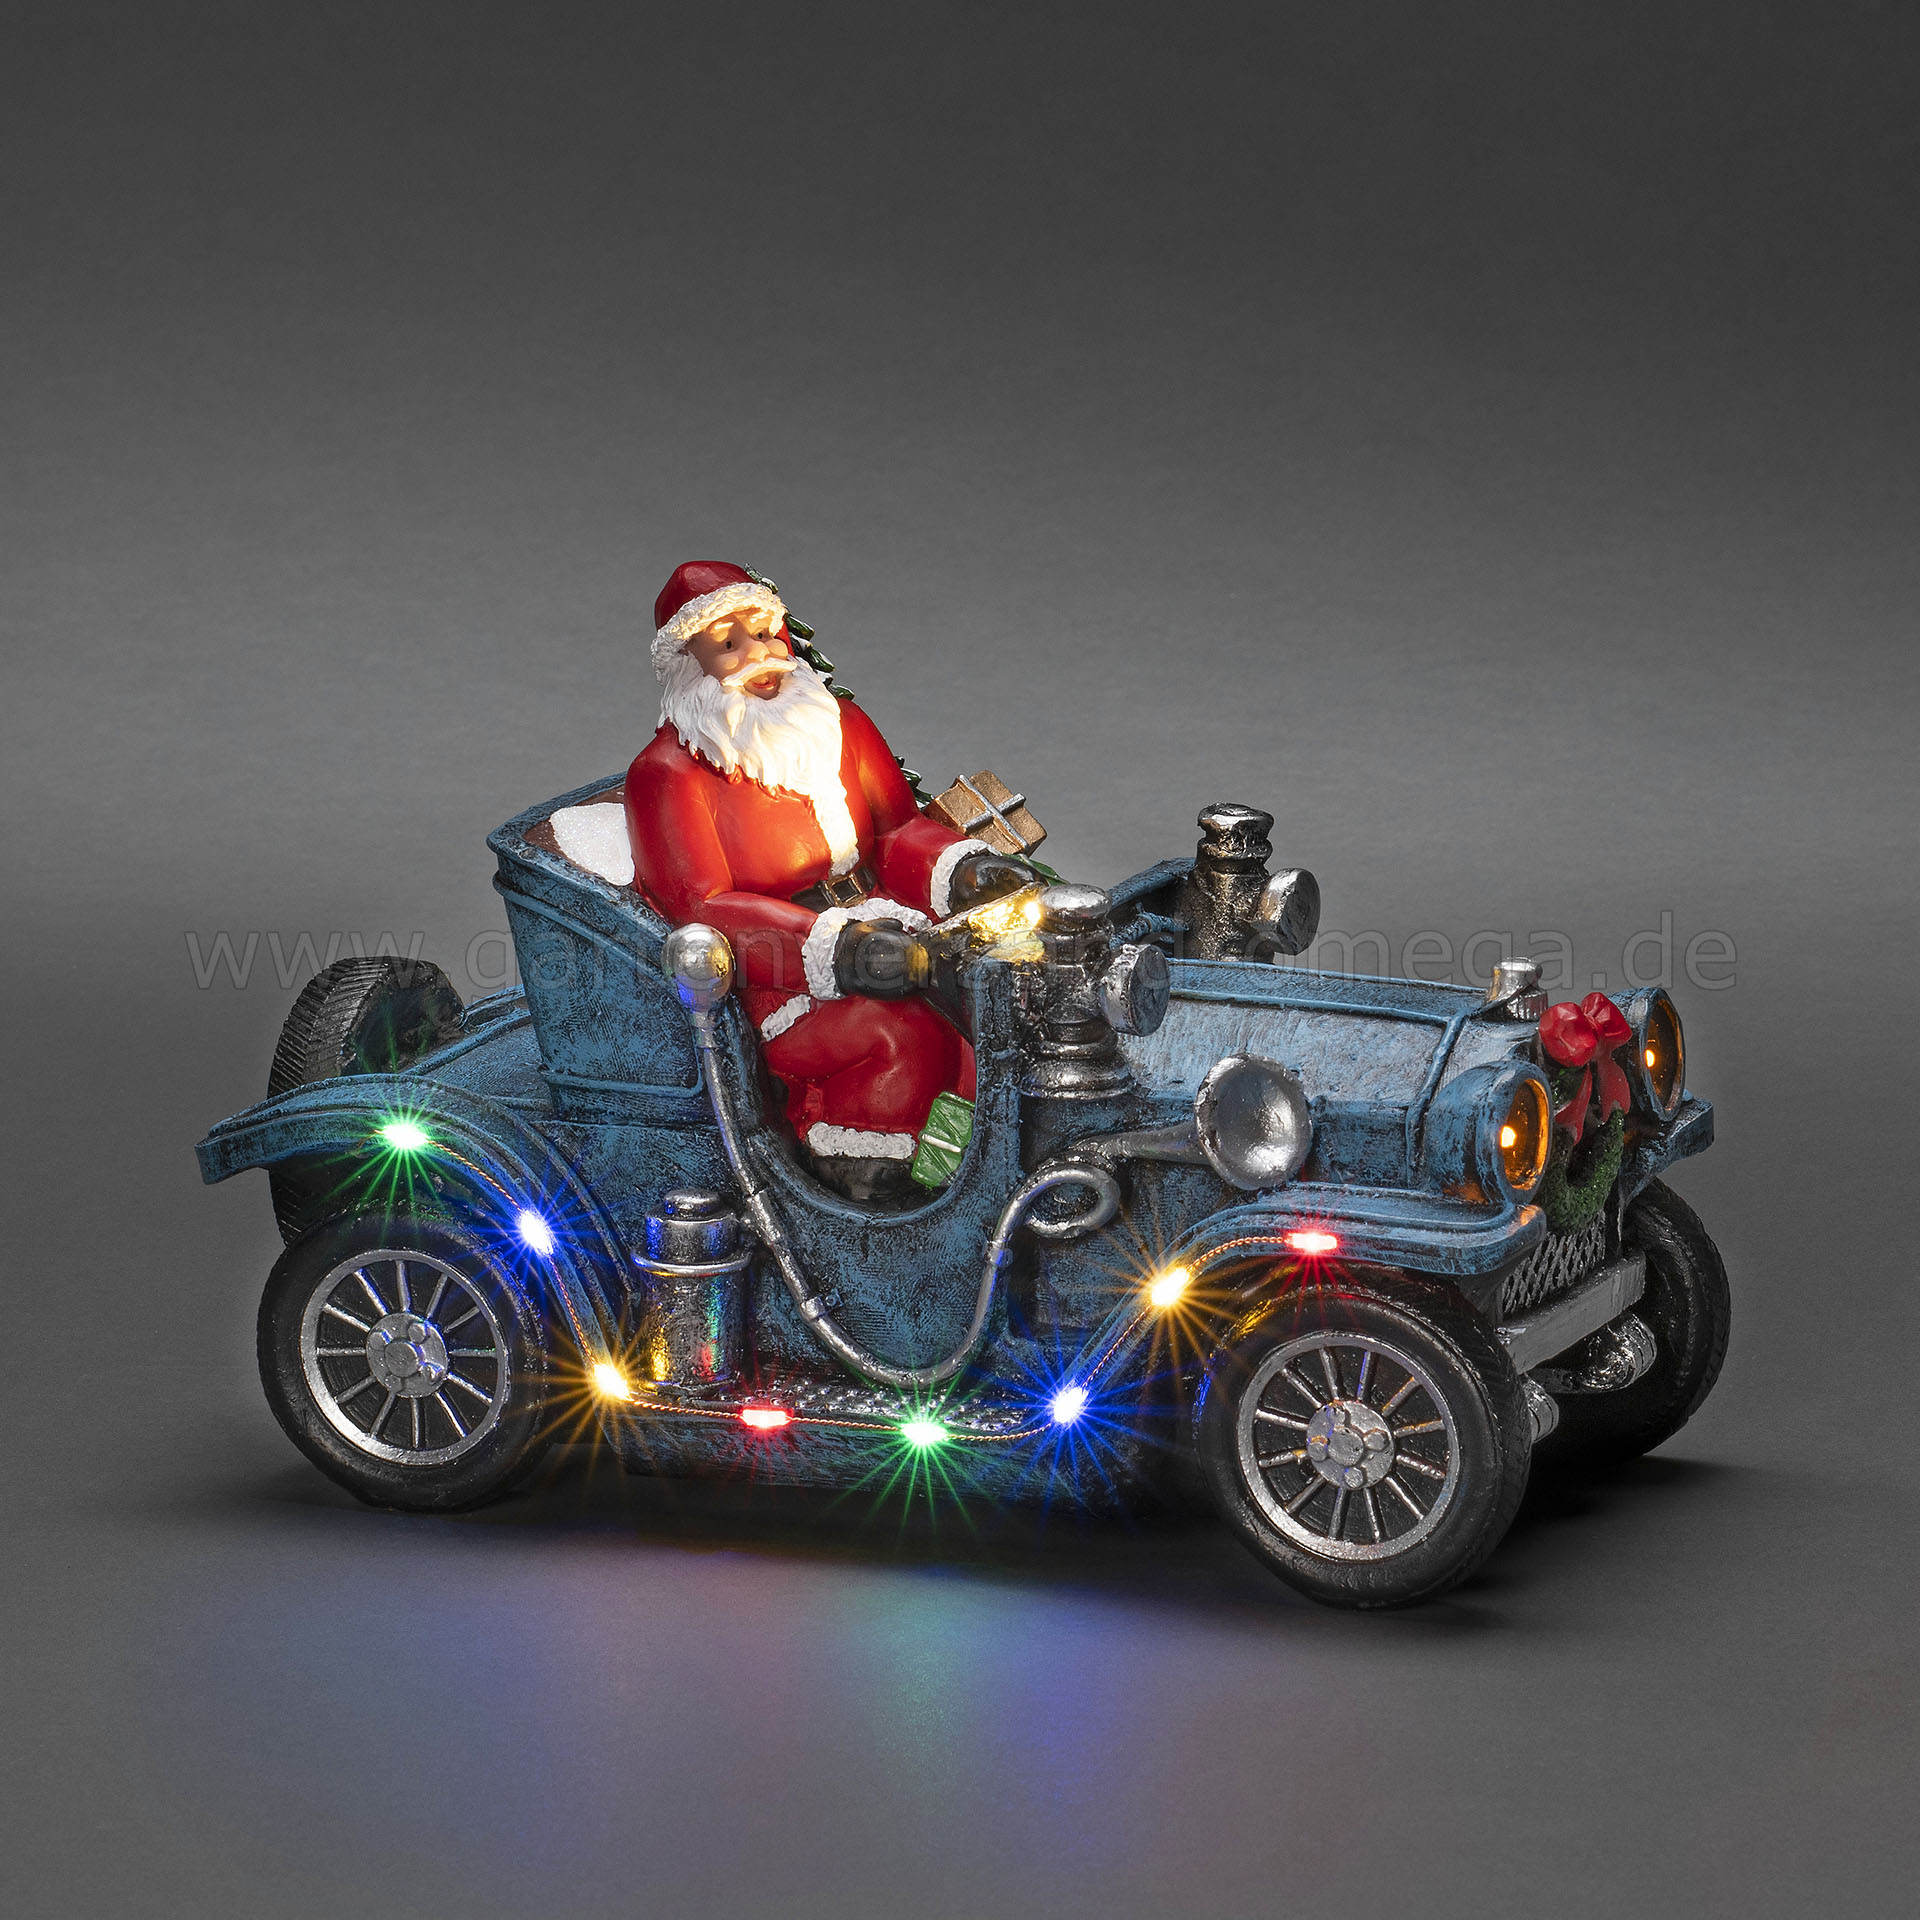 Deko-Auto Oldtimer - Auto Weihnachtsmann, Auto im Weihnachtsdeko Weihnachtsmann, mit mit Auto, LED-Beleuchtung Schreibtischdekoration Weihnachtsmann LED-Figur Auto Weihnachtsmann, LED-Szenerie Weihnachten, LED